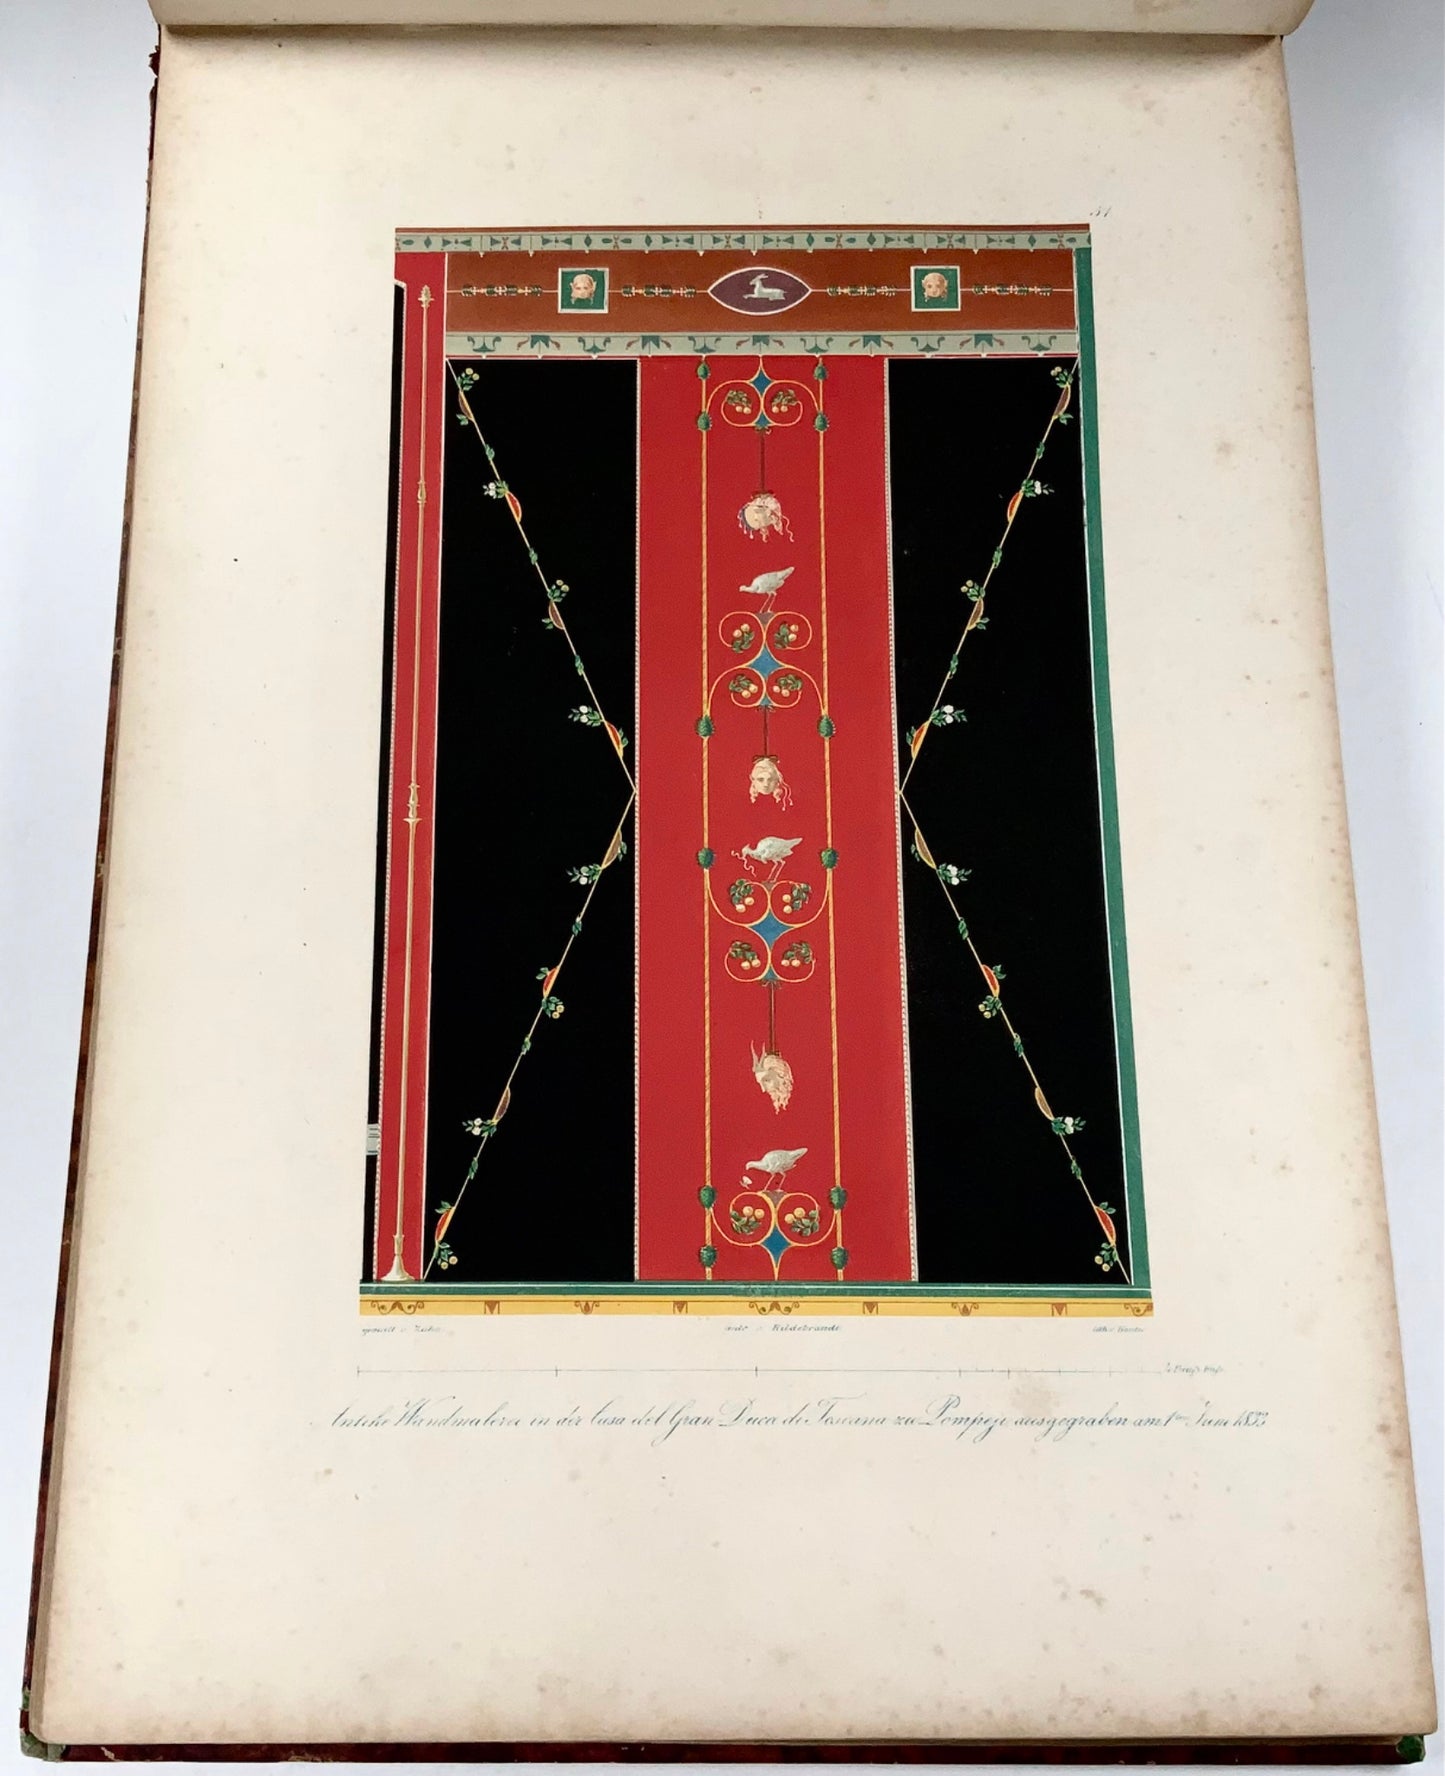 1848 Wm Zahn, Beau livre in-folio sur la peinture murale pompéienne, 50 lithographies en couleurs